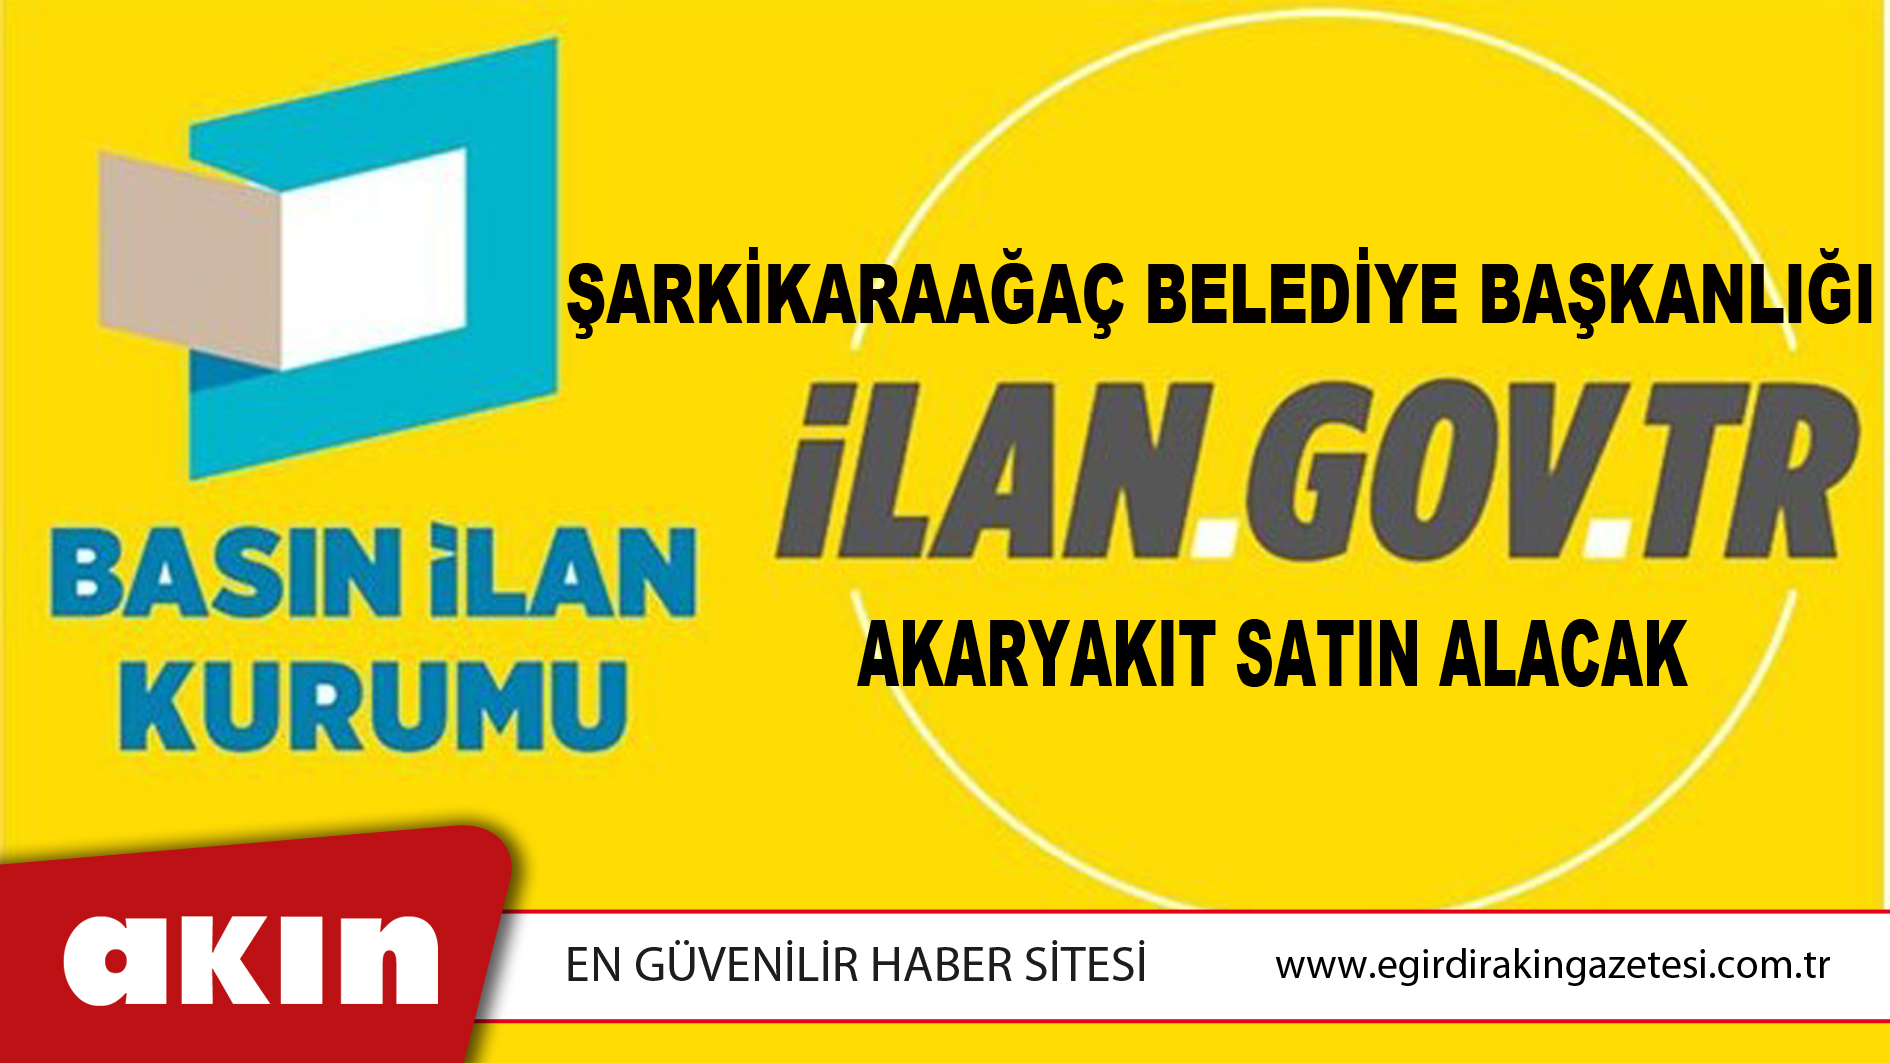 Şarkikaraağaç Belediye Başkanlığı Akaryakıt Satın Alacak